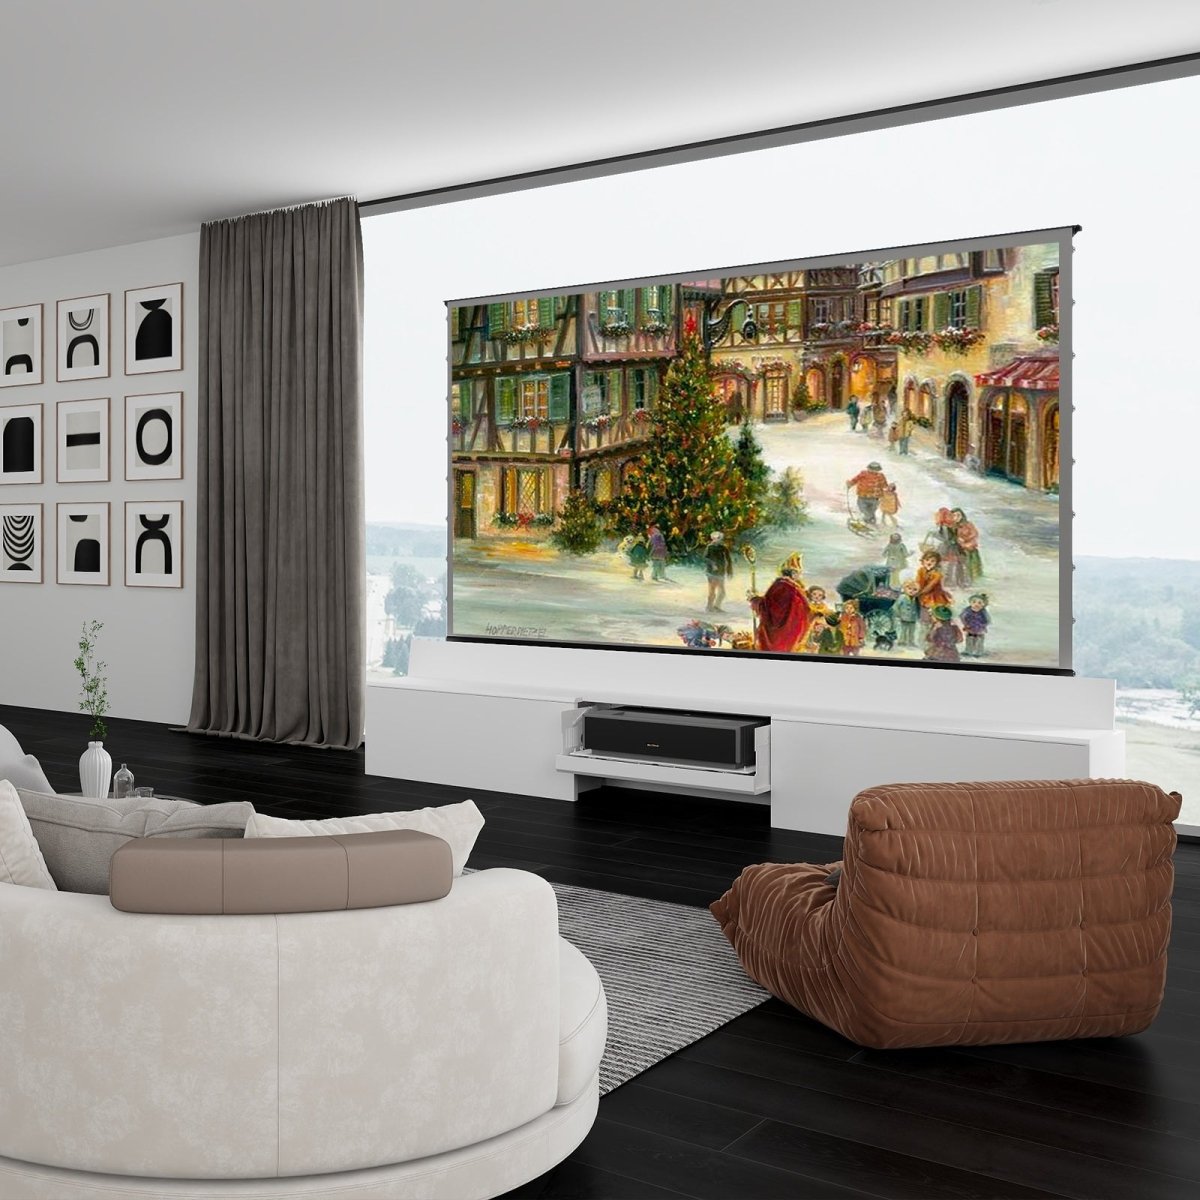 Newest VIVIDSTORM Bundle-Projector&Screen&Fully Concealed Motorised Laser TV Cabinet Paris - VIVIDSTORM